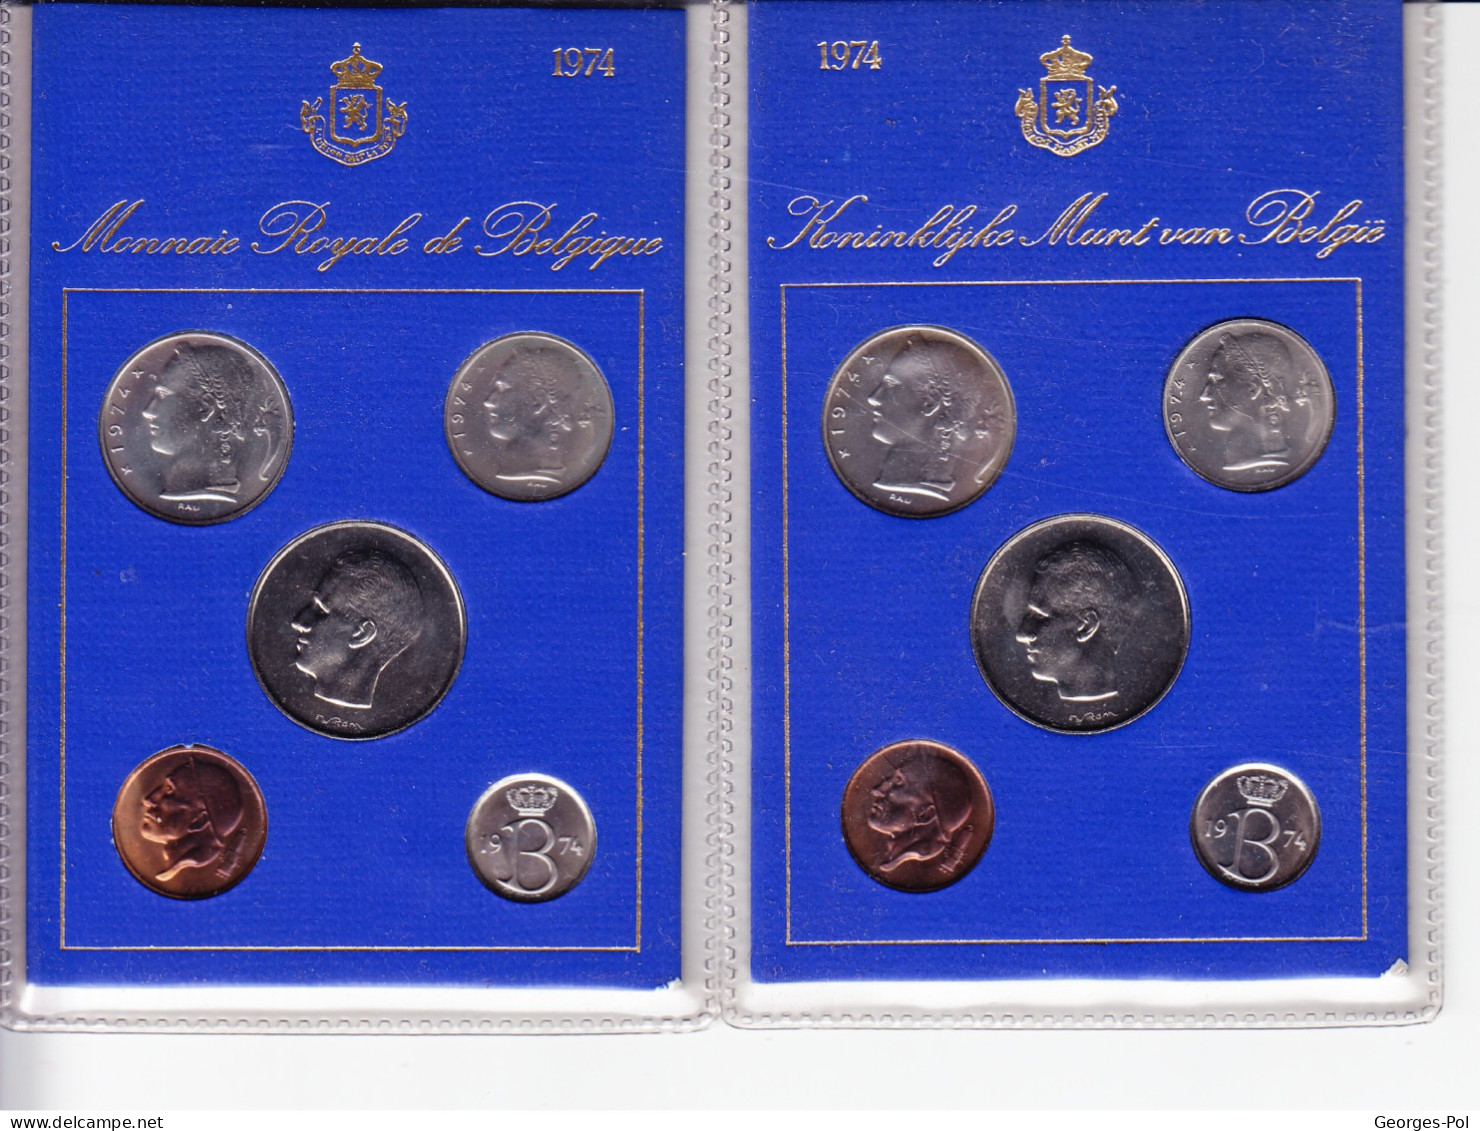 Monnaie Royale De Belgique 1974 Koninklijke Munt Van België. 2 Cartes De 5 Pièces Non Circulées - FDC, BU, Proofs & Presentation Cases